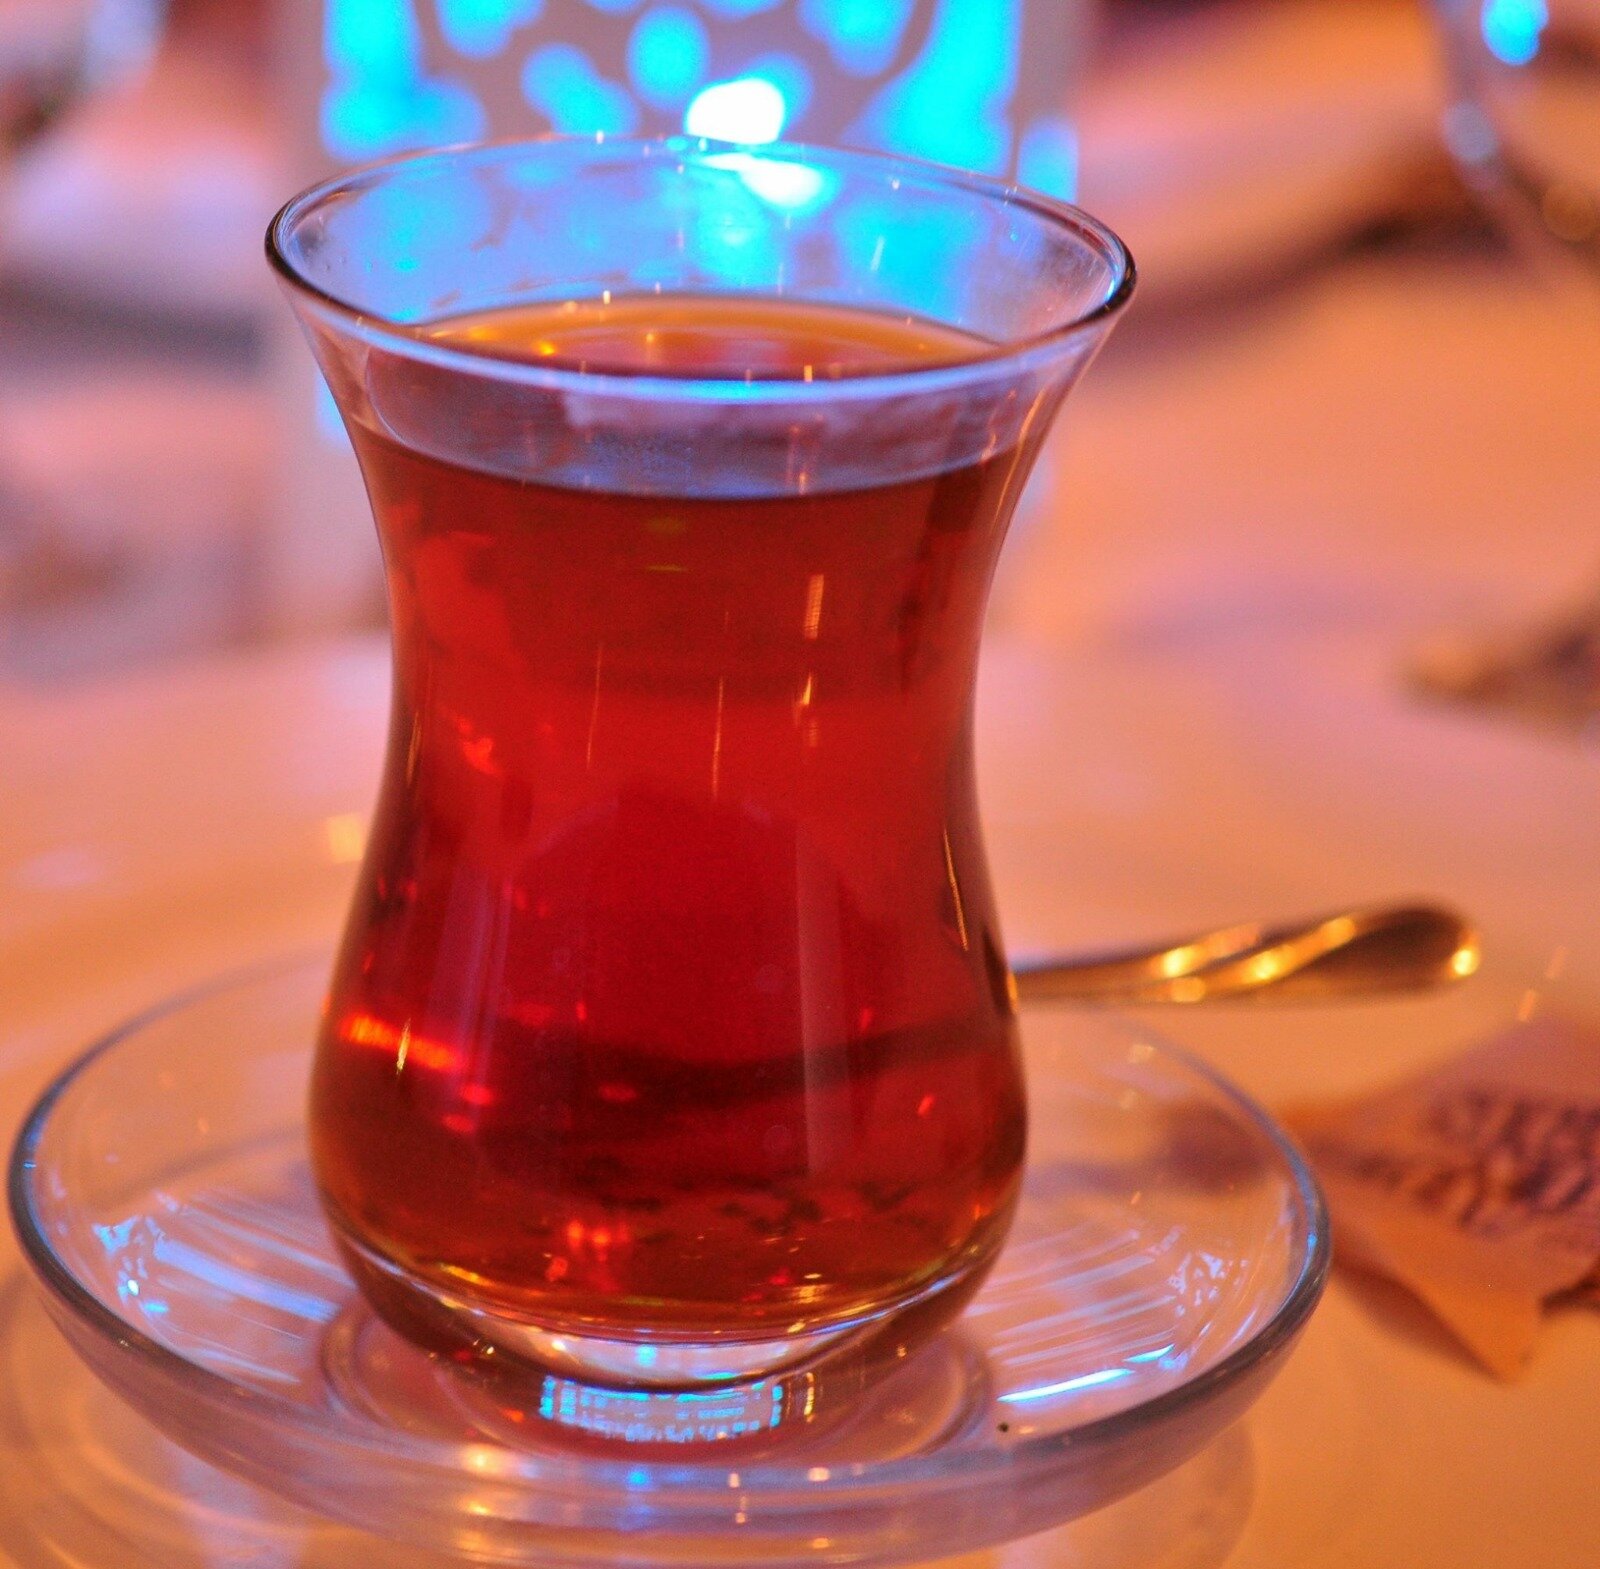 Turkish black tea